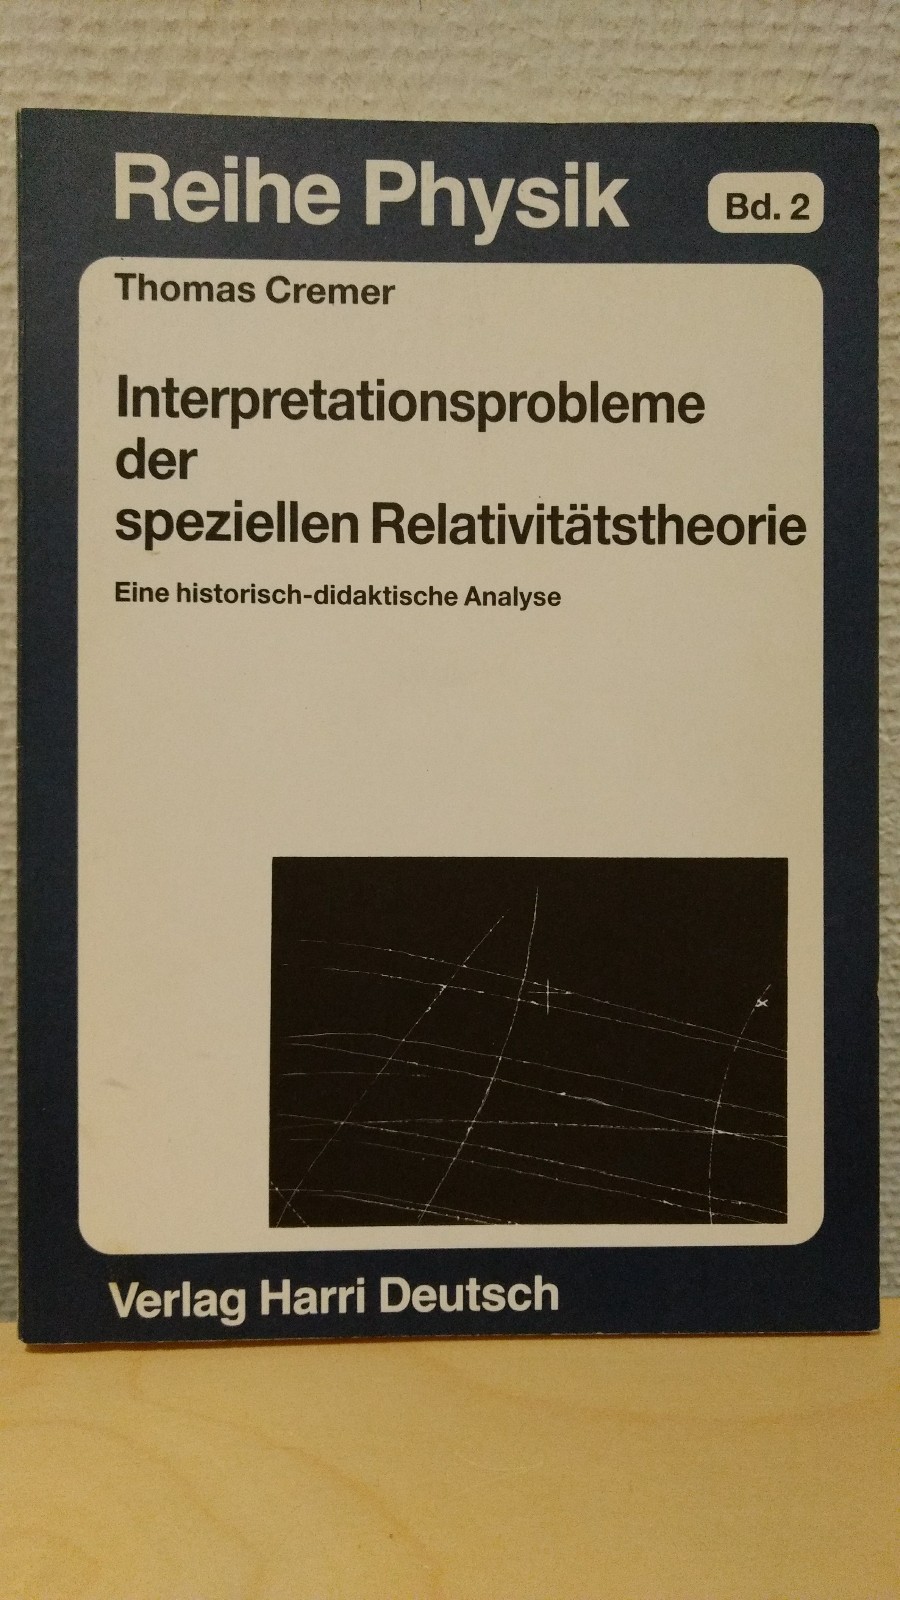 Interpretationsprobleme der speziellen Relativitätstheorie. Eine historisch-didaktische Analyse